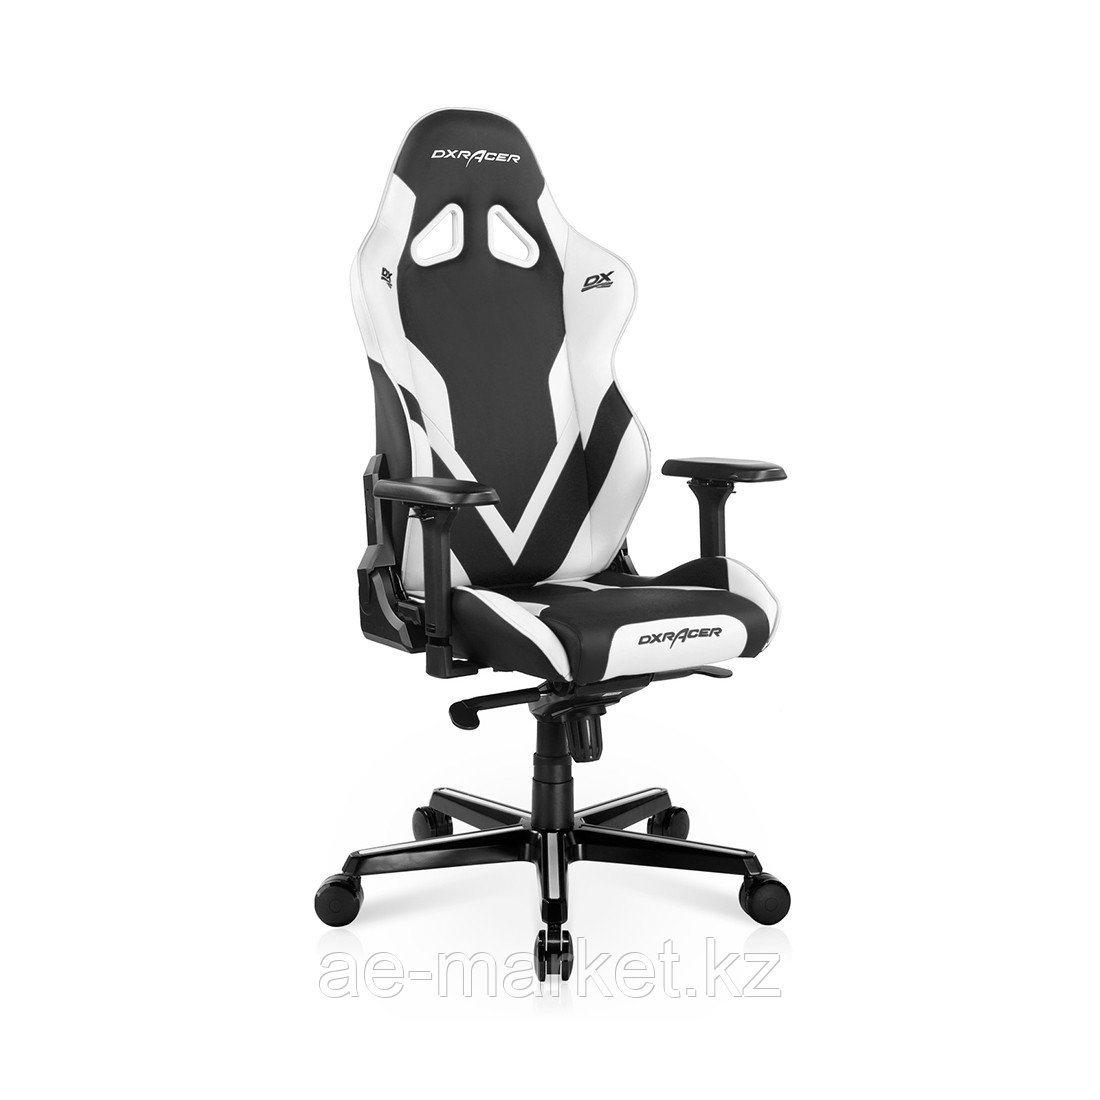 Игровое компьютерное кресло DX Racer GC/G001/NW-D2, фото 1